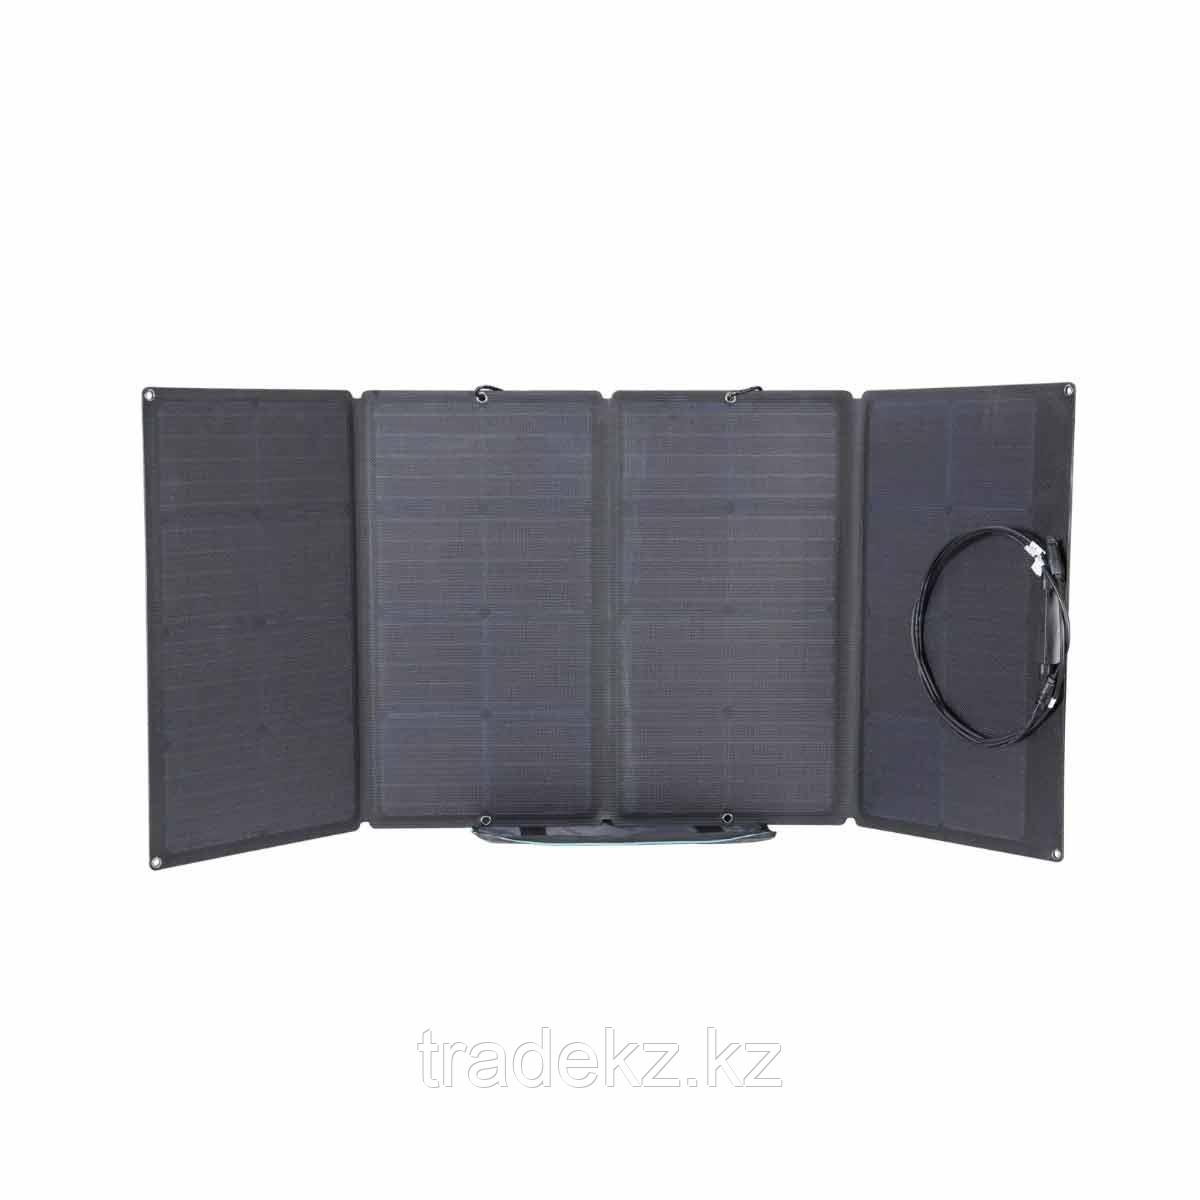 Солнечная панель EcoFlow Solar Panel Charger 160 Вт